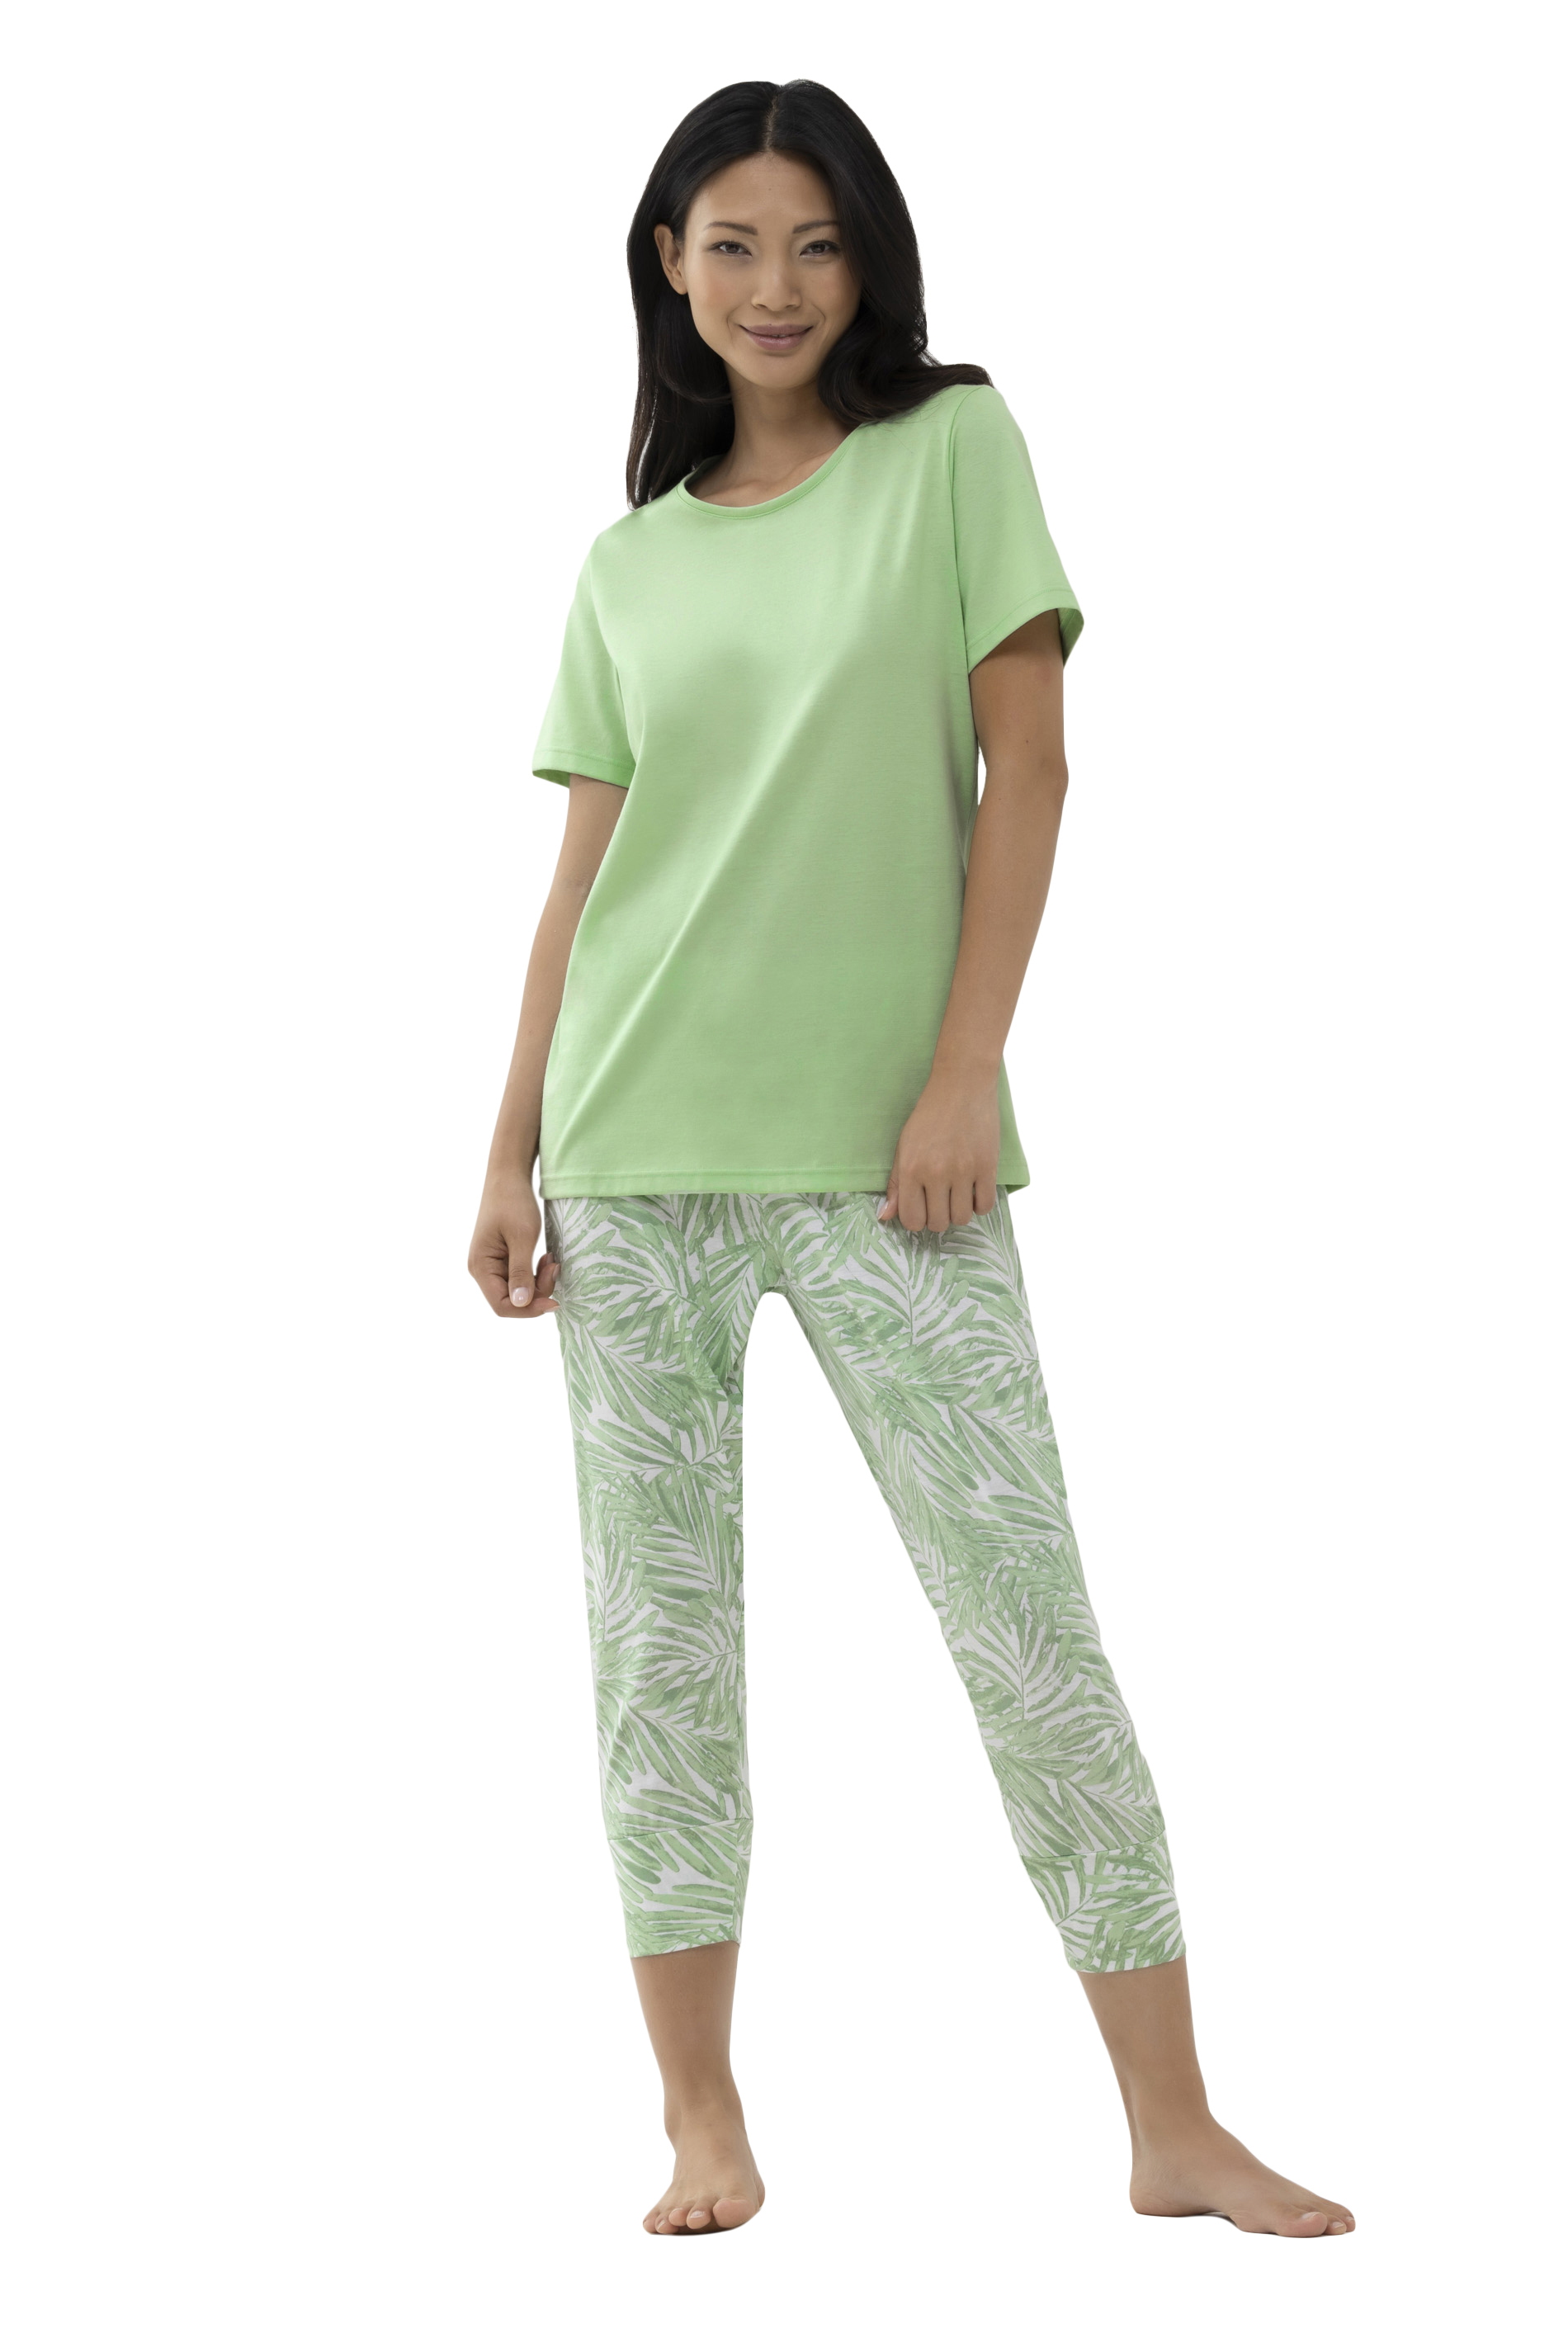 Damen-Schlafanzug mit  gemusterter 3/4 langer Hose und uni 1/2 Arm-Shirt aus Baumwoll-Jersey